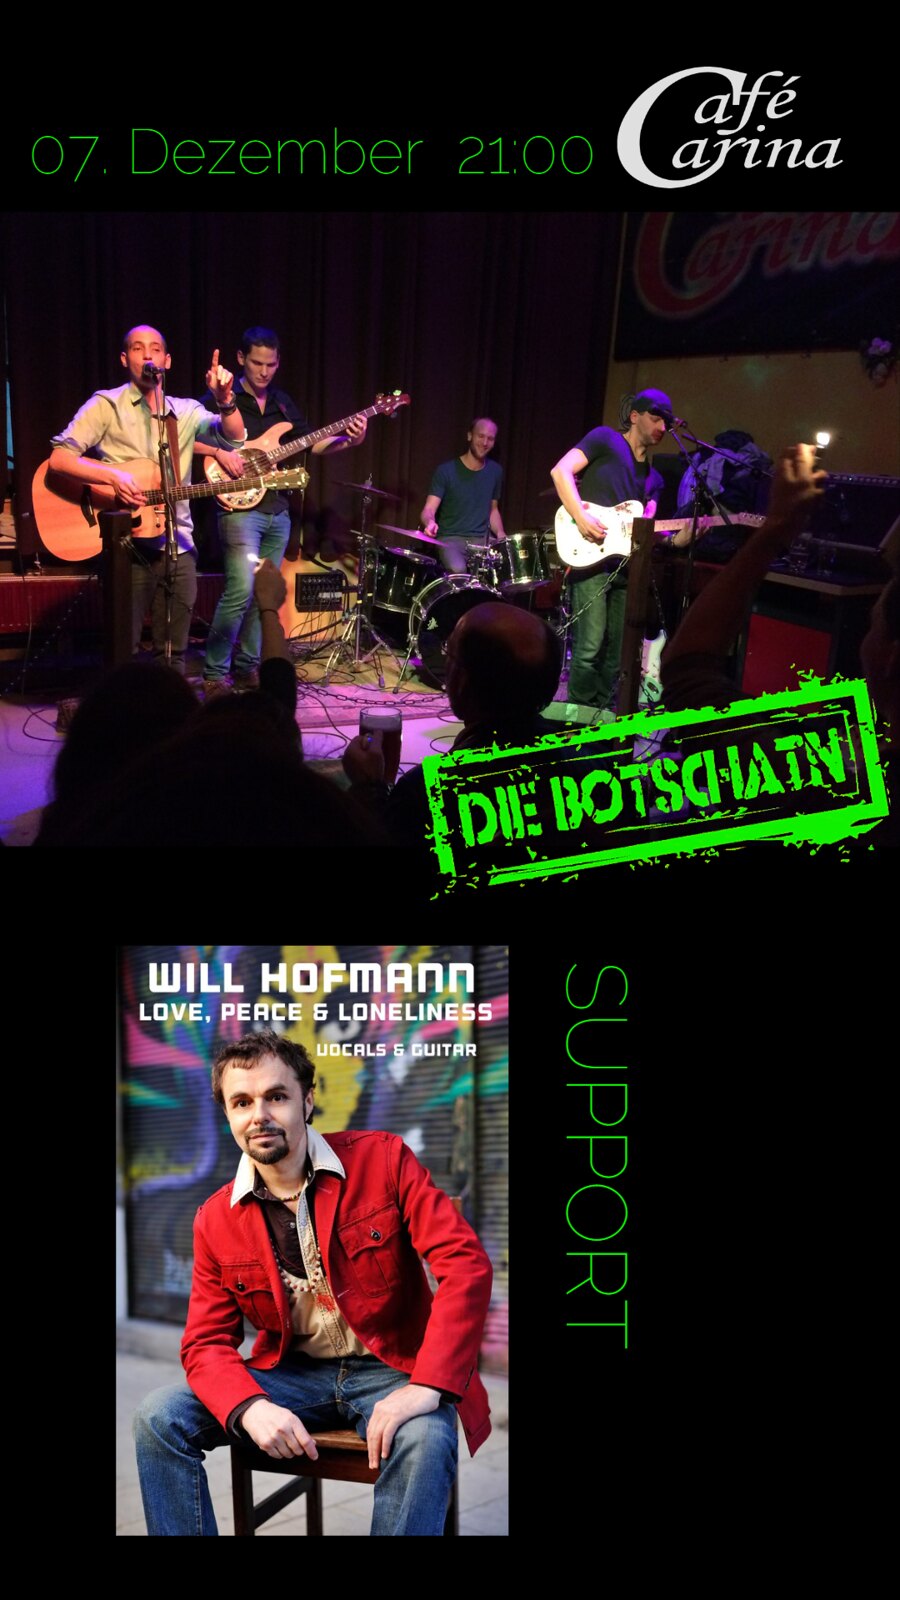 Die Botschatn / Will Hofmann